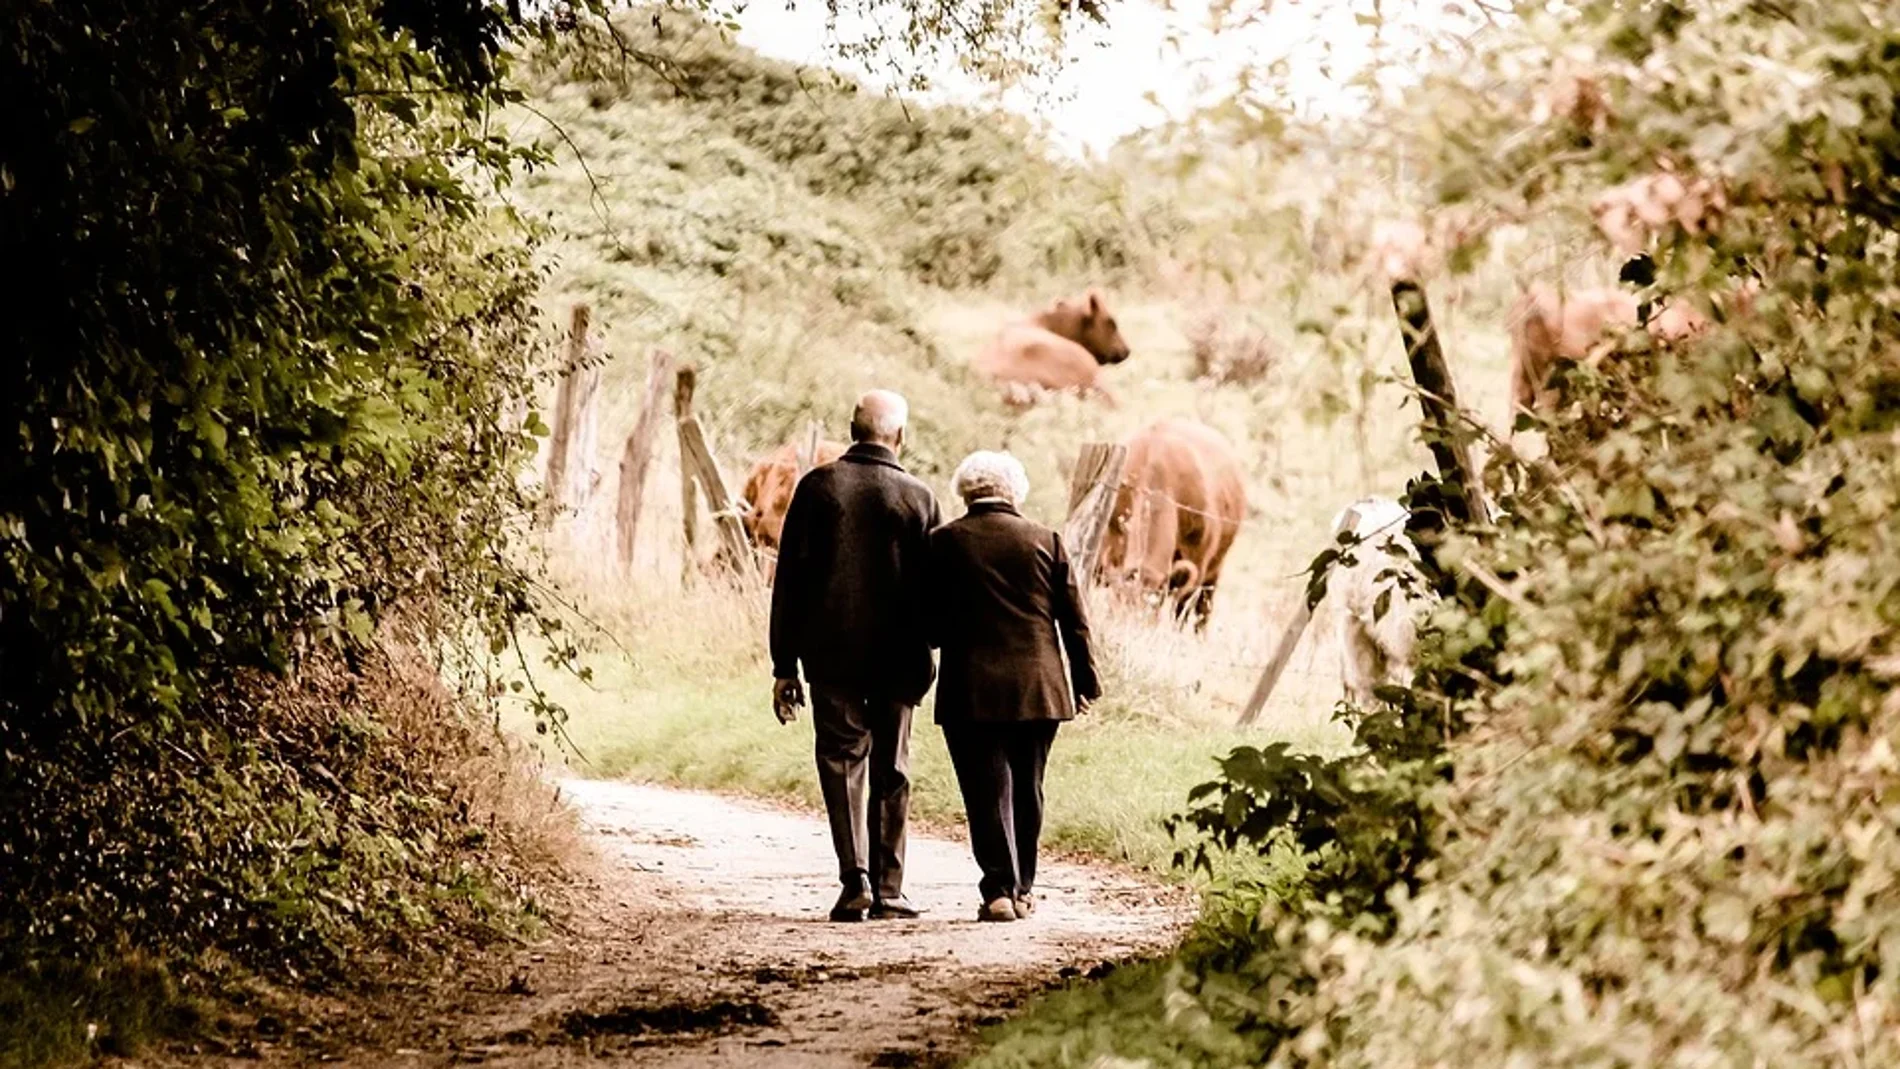 La atención a las personas mayores lleva siendo desde hace años una tarea pendiente en España. Tanto desde el punto de vista de los servicios asistenciales como desde la perspectiva de los cuidadores, queda todavía mucho camino por recorrer.